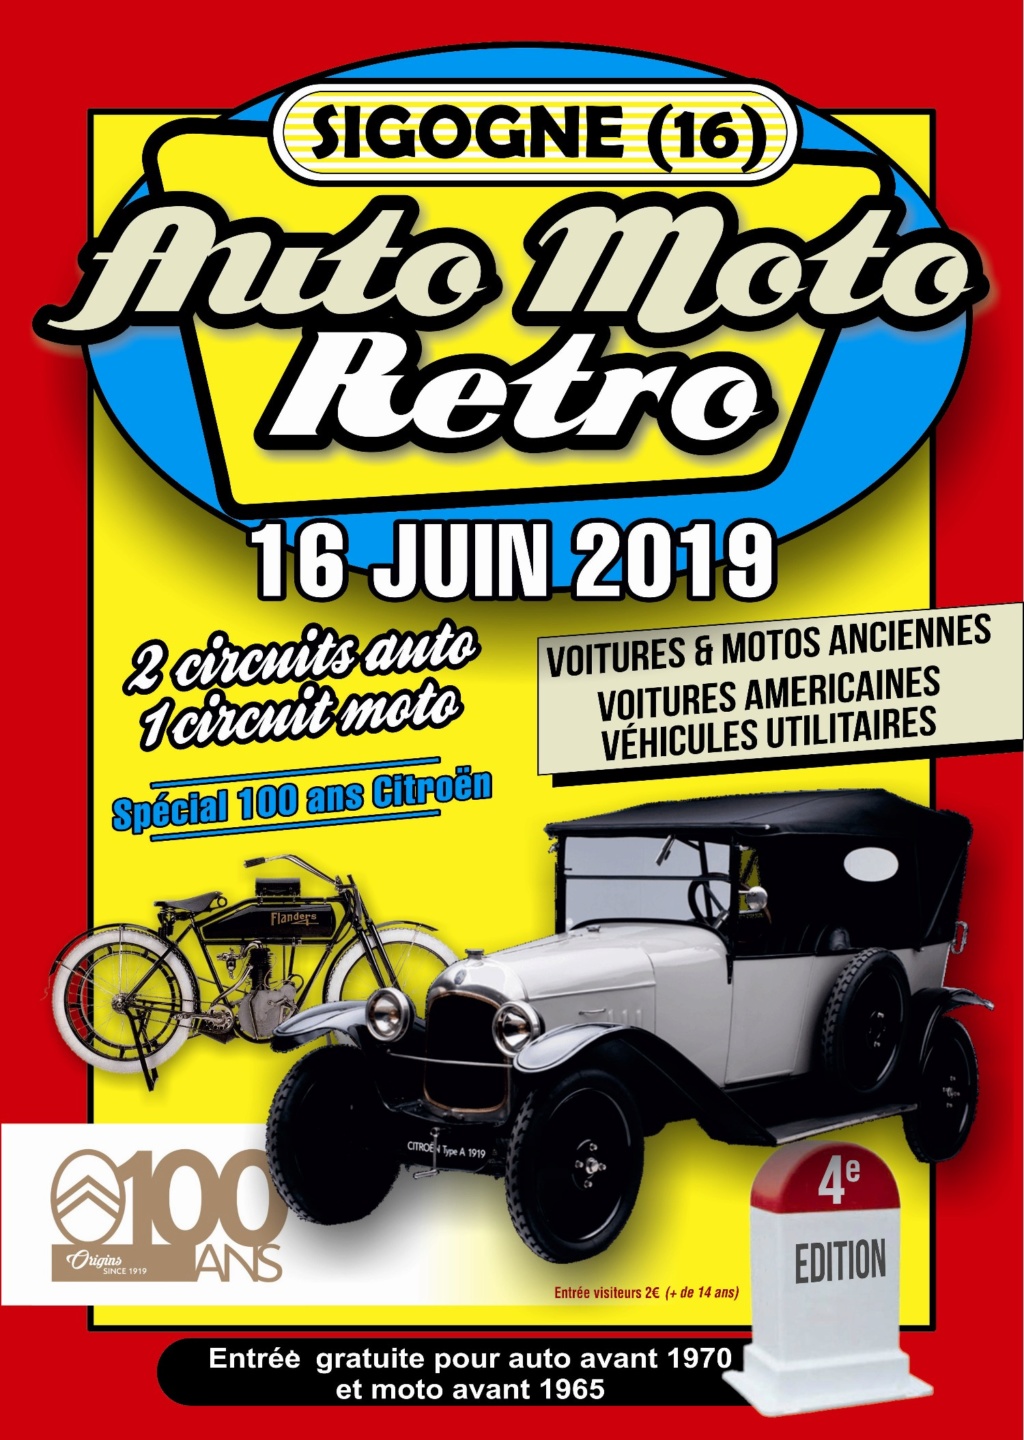 EVENEMENTS MOTOS ANCIENNES Calendrier évènementiel des Grands-Mères Motos Montmorillonnaises 2019si11